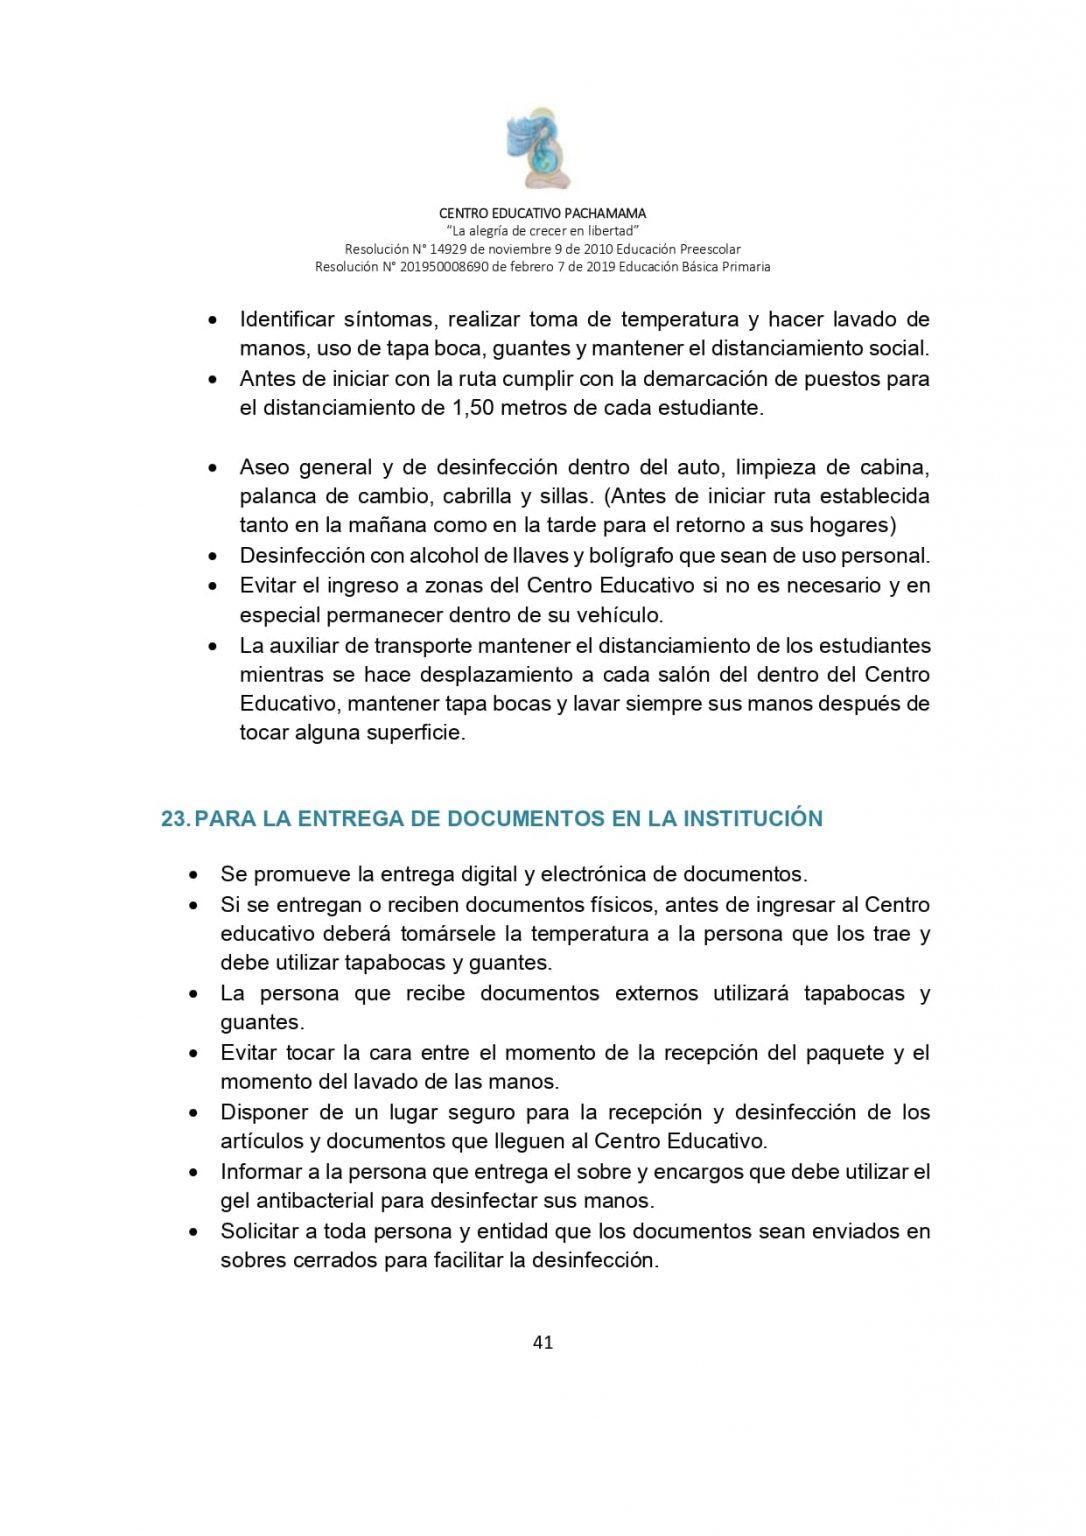 PROTOCOLO DE BIOSEGURIDAD PACHAMAMA Última Versión (3)-convertido_page-0041